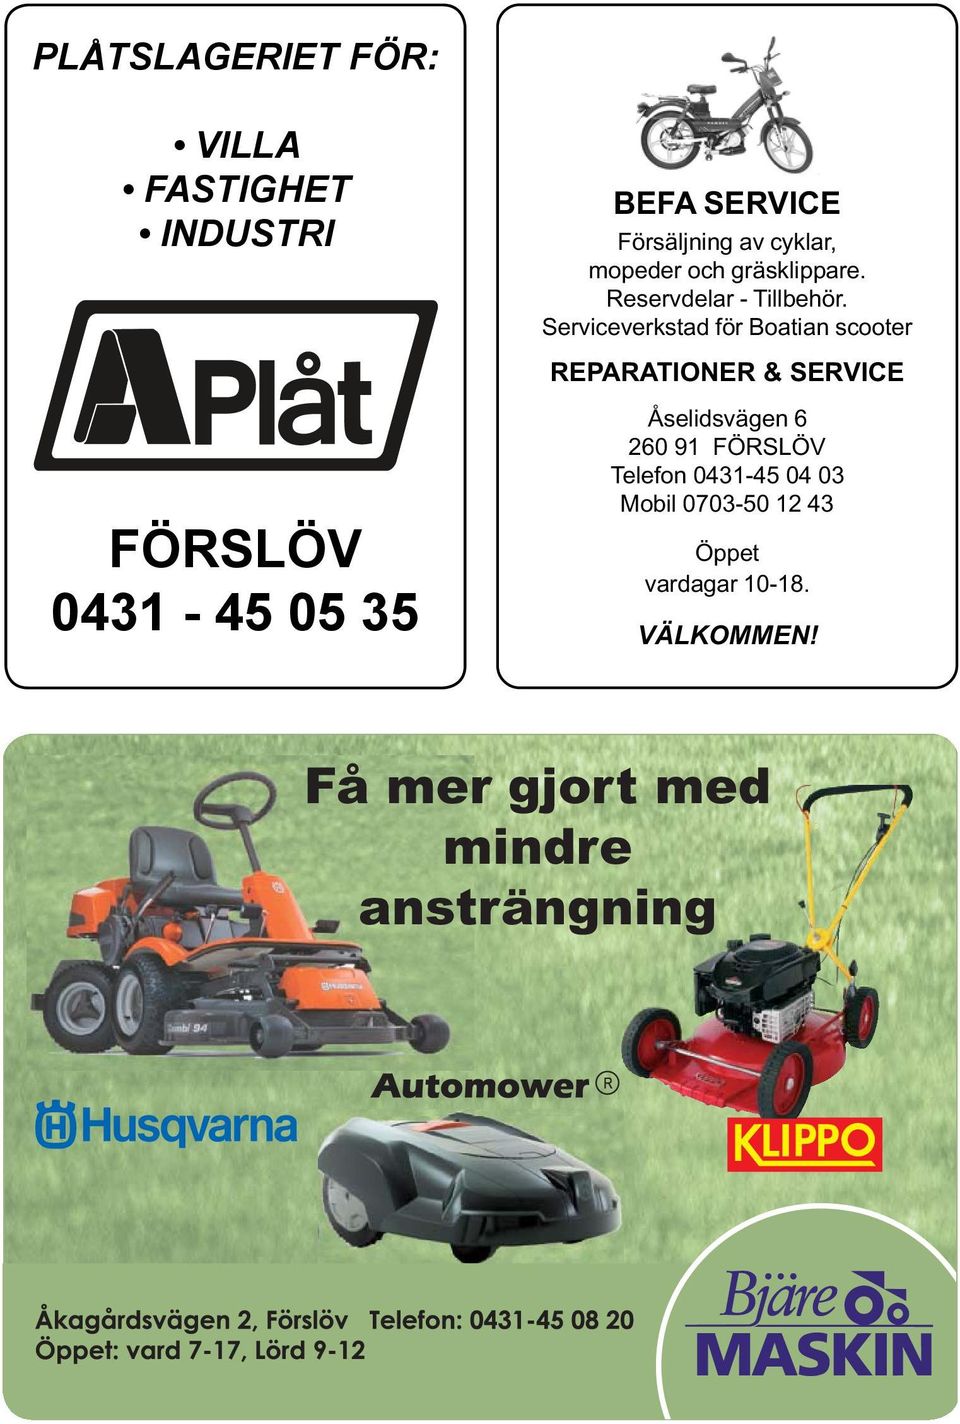 Serviceverkstad för Boatian scooter REPARATIONER & SERVICE FÖRSLÖV 0431-45 05 35